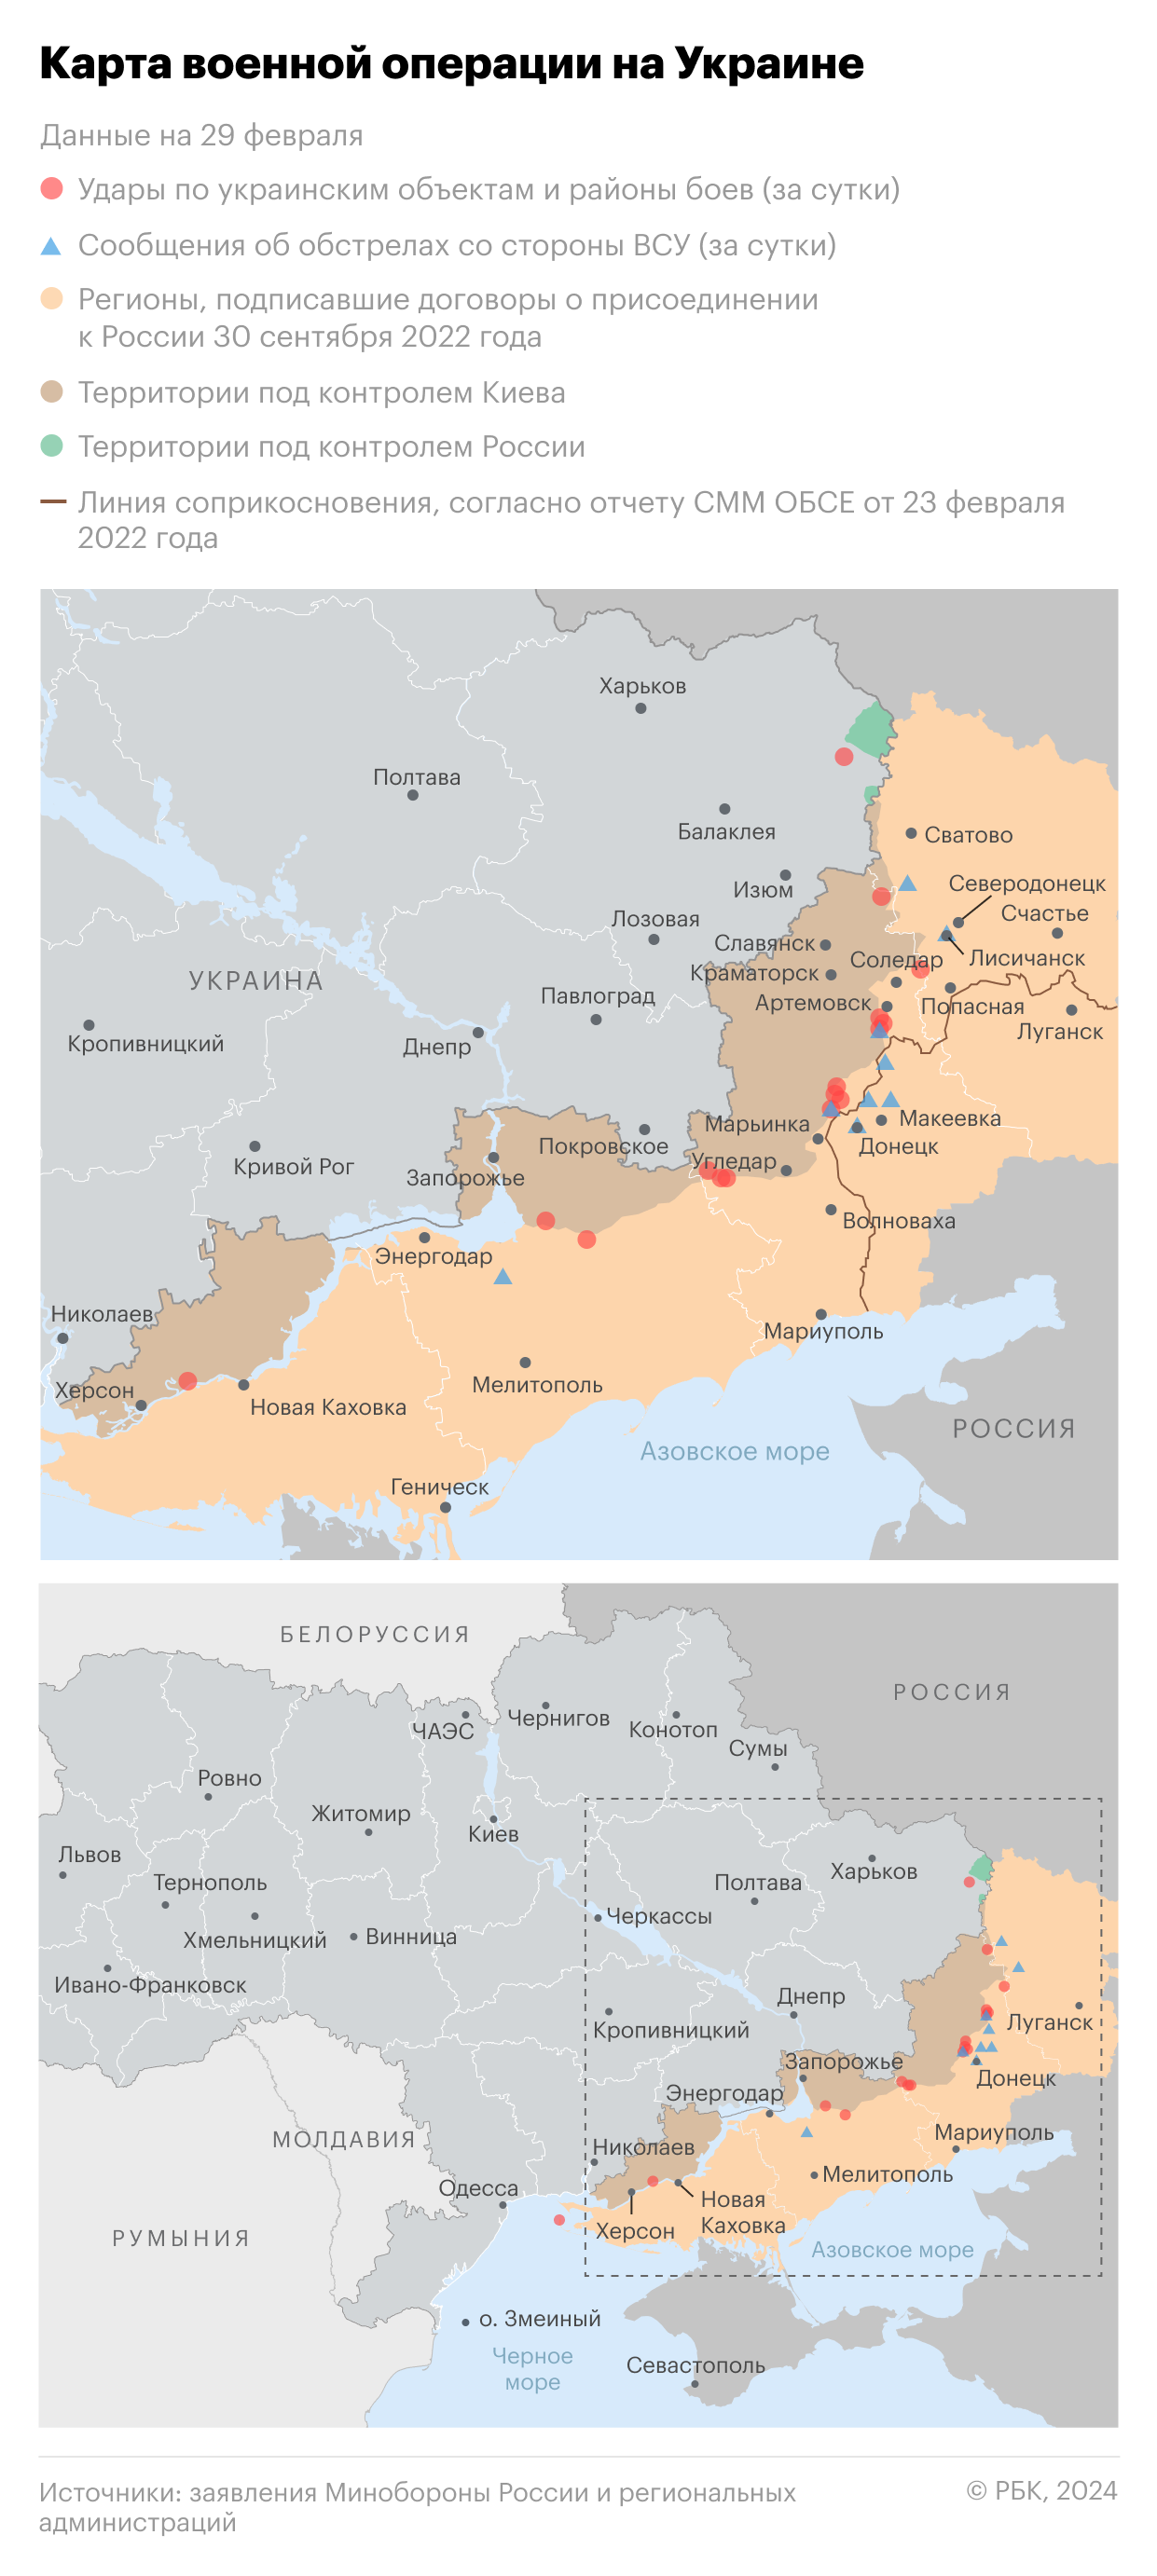 Военная операция на Украине. Карта на 29 февраля